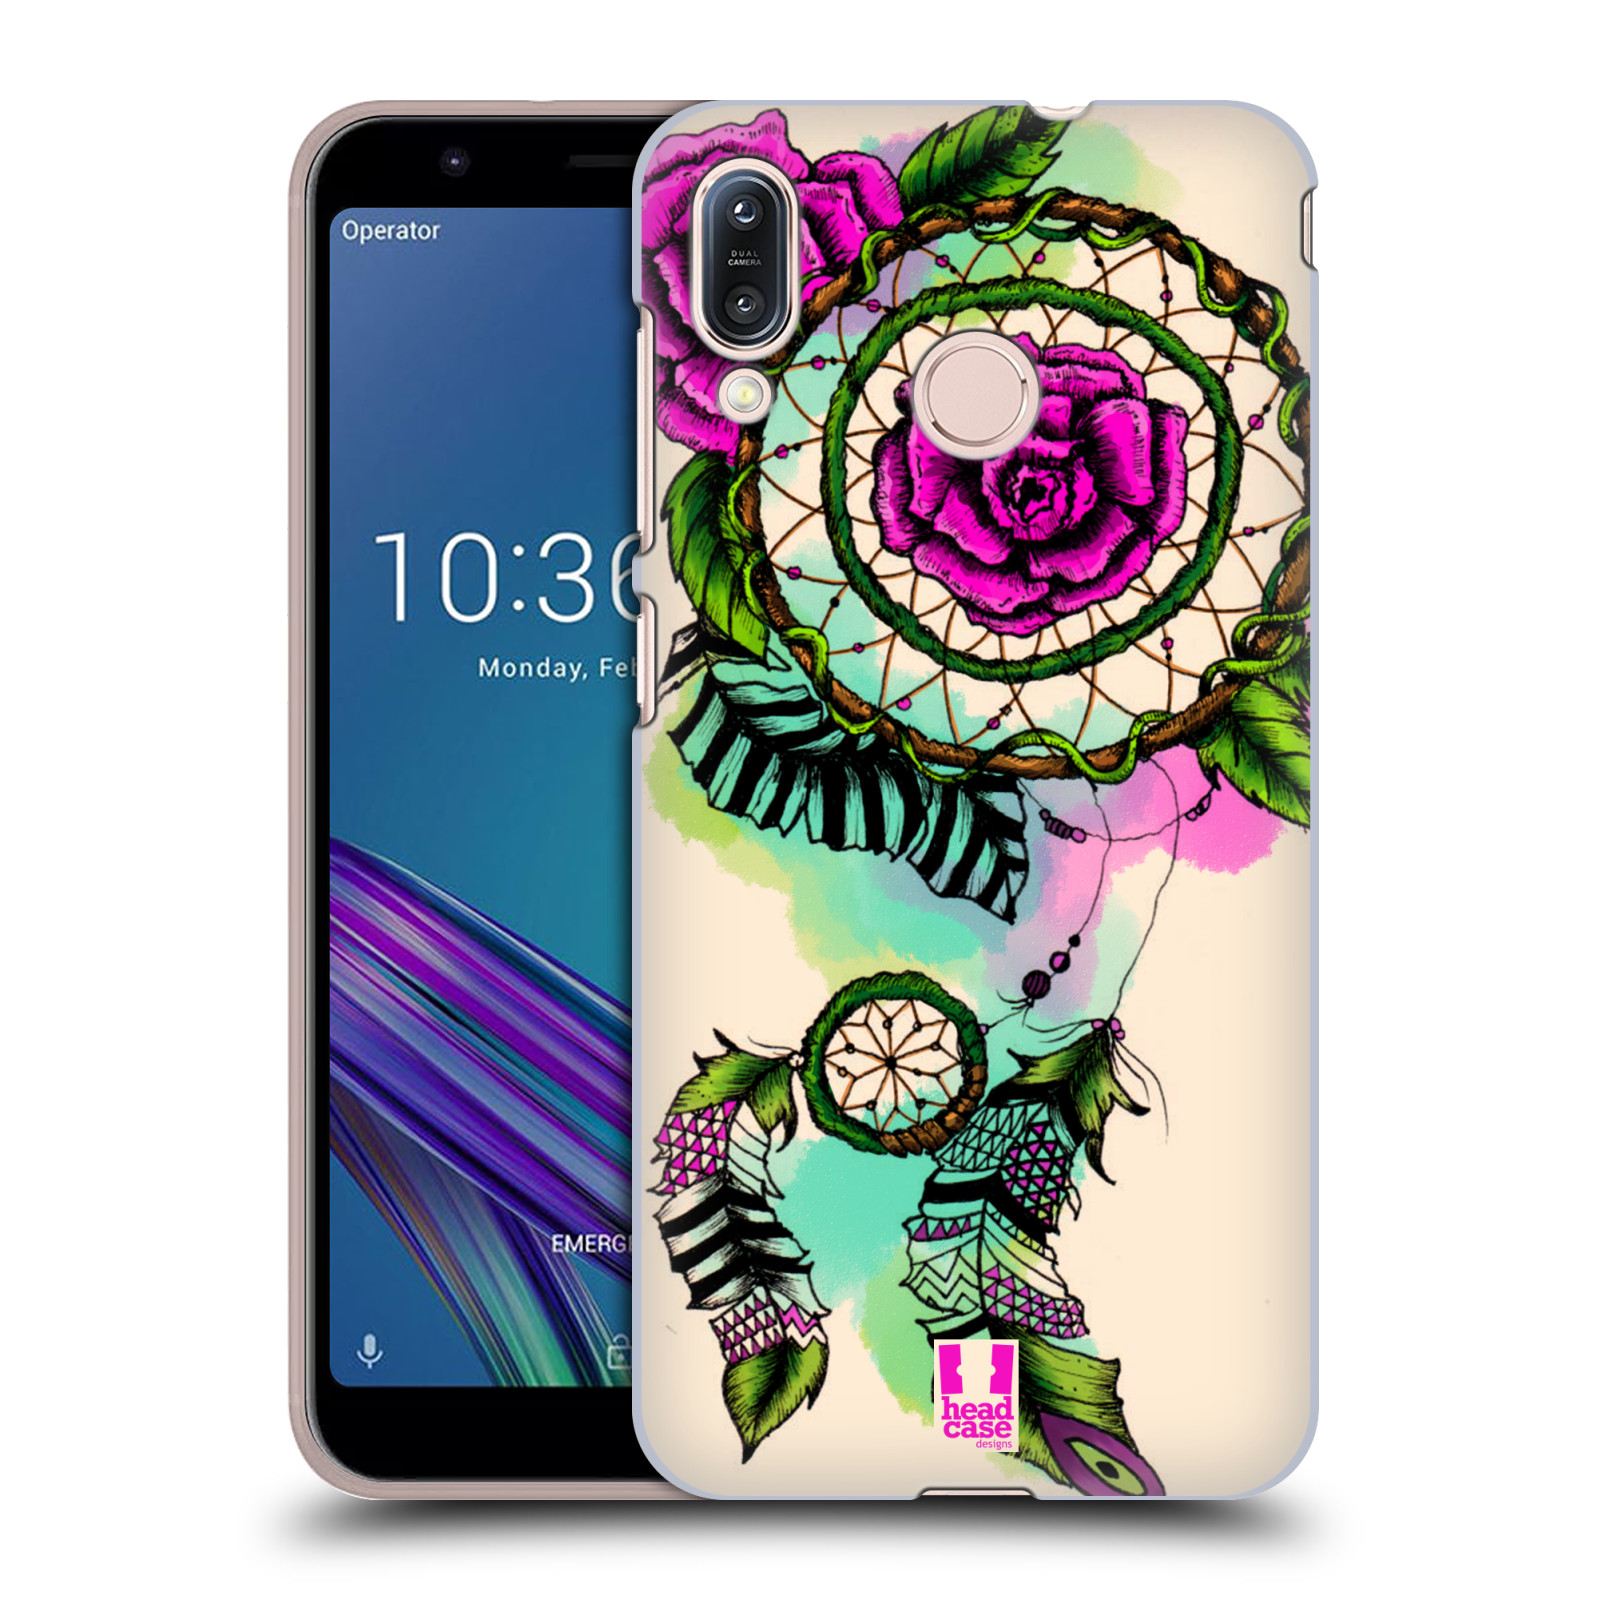 Pouzdro na mobil Asus Zenfone Max M1 (ZB555KL) - HEAD CASE - vzor Květy lapač snů růže